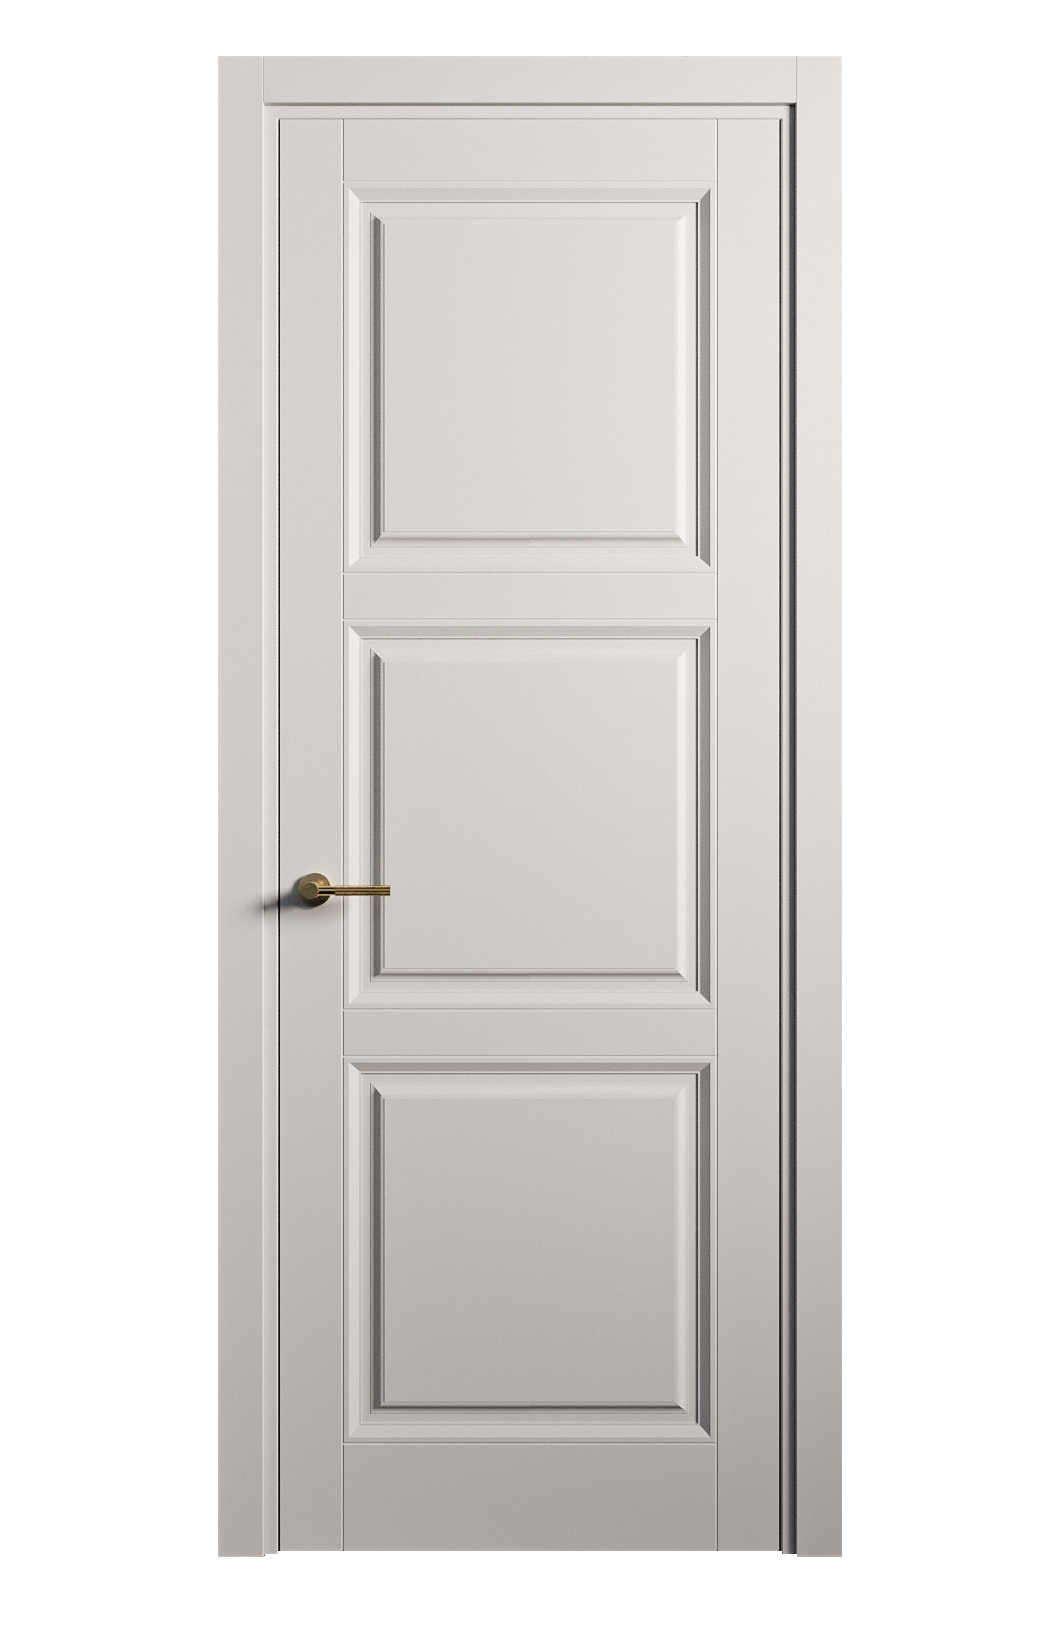 Межкомнатная дверь Venezia-3 глухая эмаль ral 7047 25757